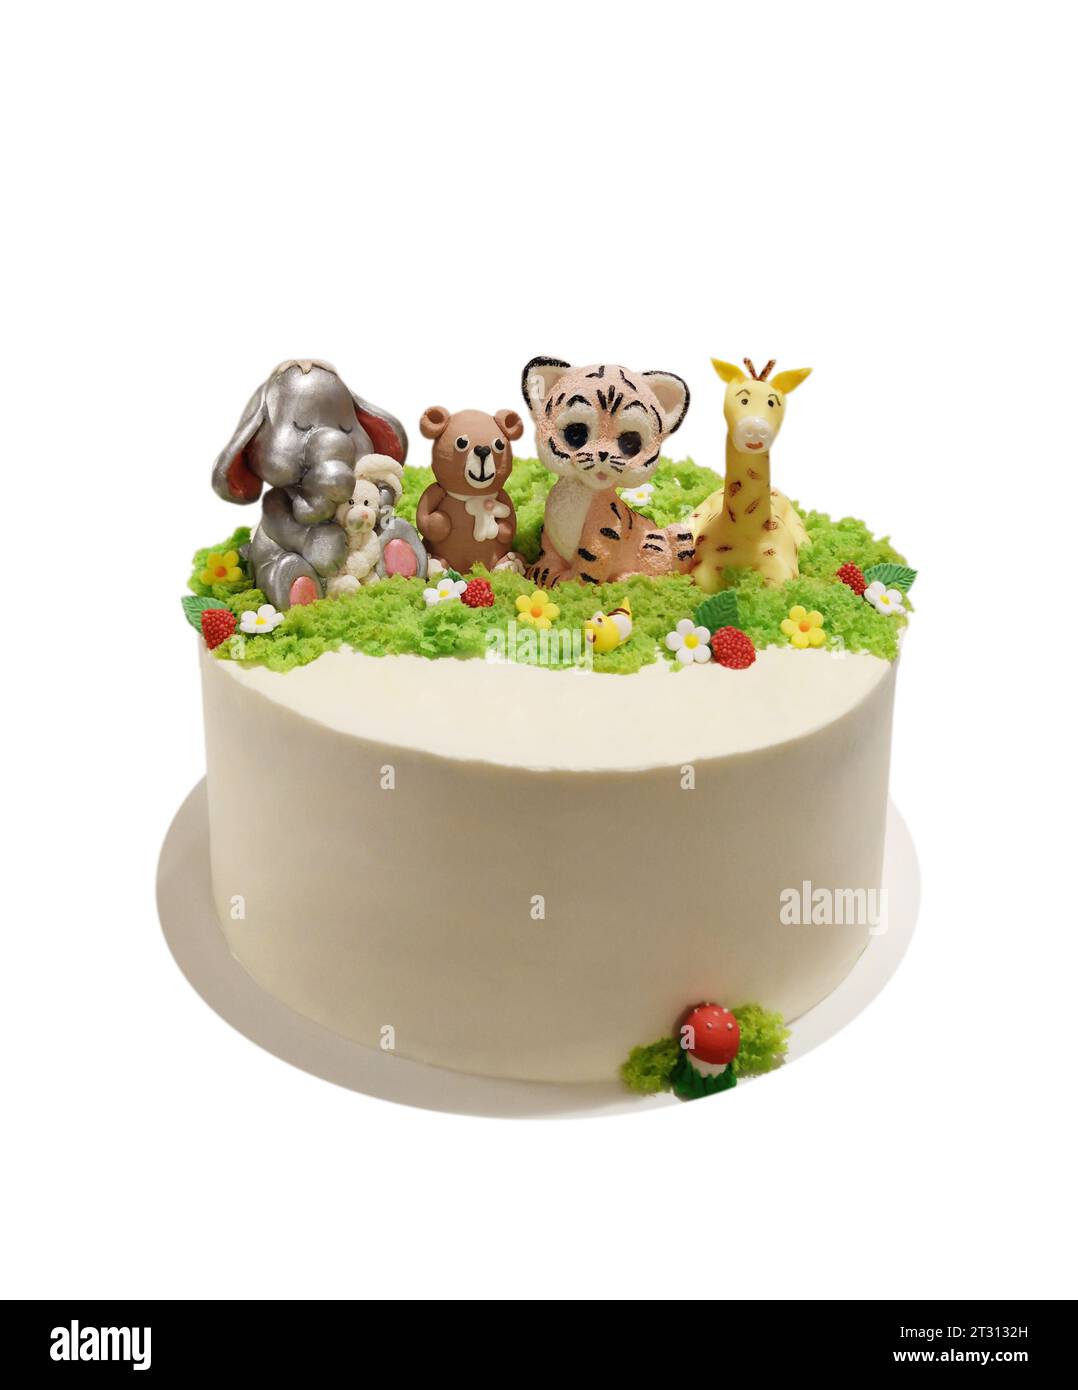 Una torta rotonda color crema decorata con figure di animali fatti di mastice, isolata su uno sfondo bianco Foto Stock